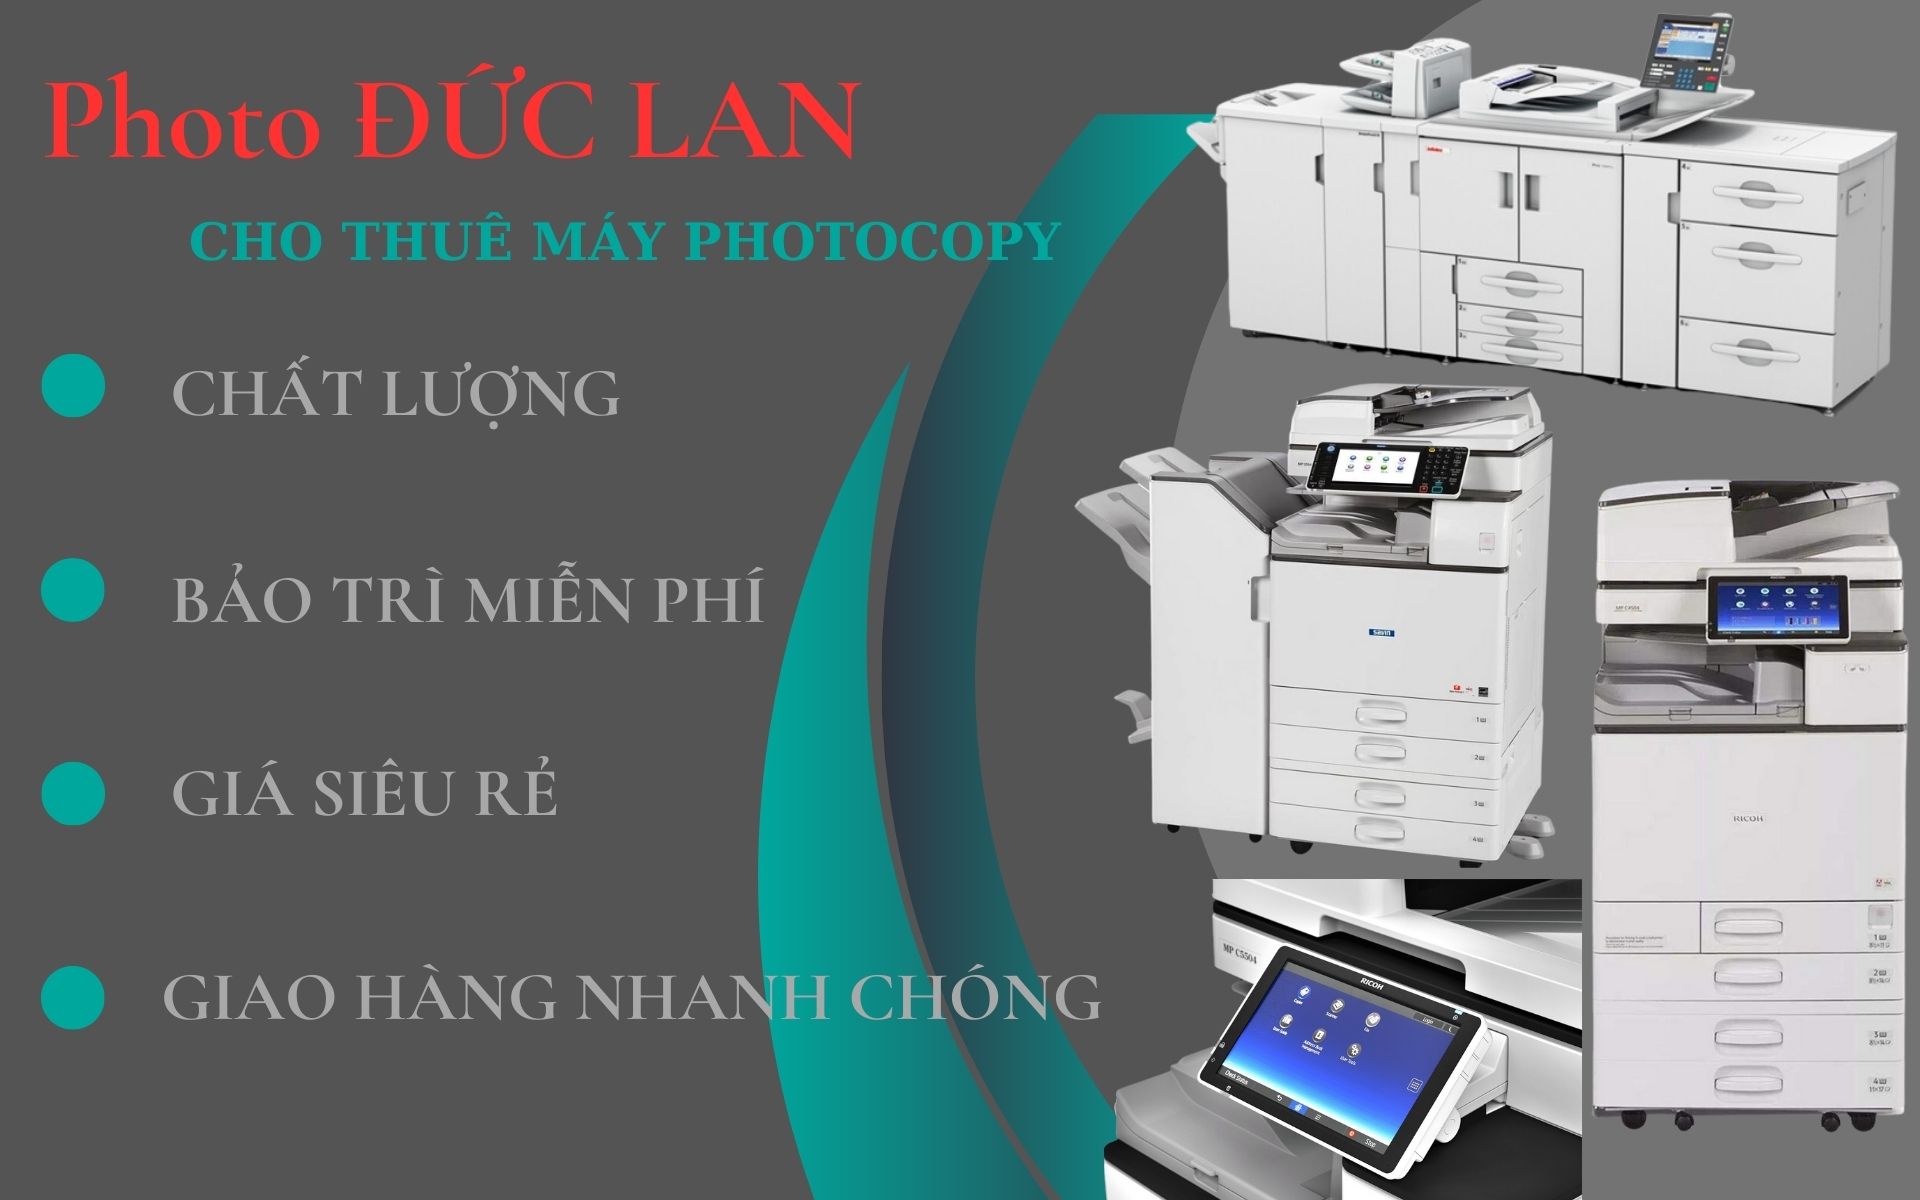 Để thuê được máy photocopy tại huyện Thống Nhất Đồng Nai uy tín không khó. Tuy nhiên bạn cần phải biết đến một số bí quyết riêng.